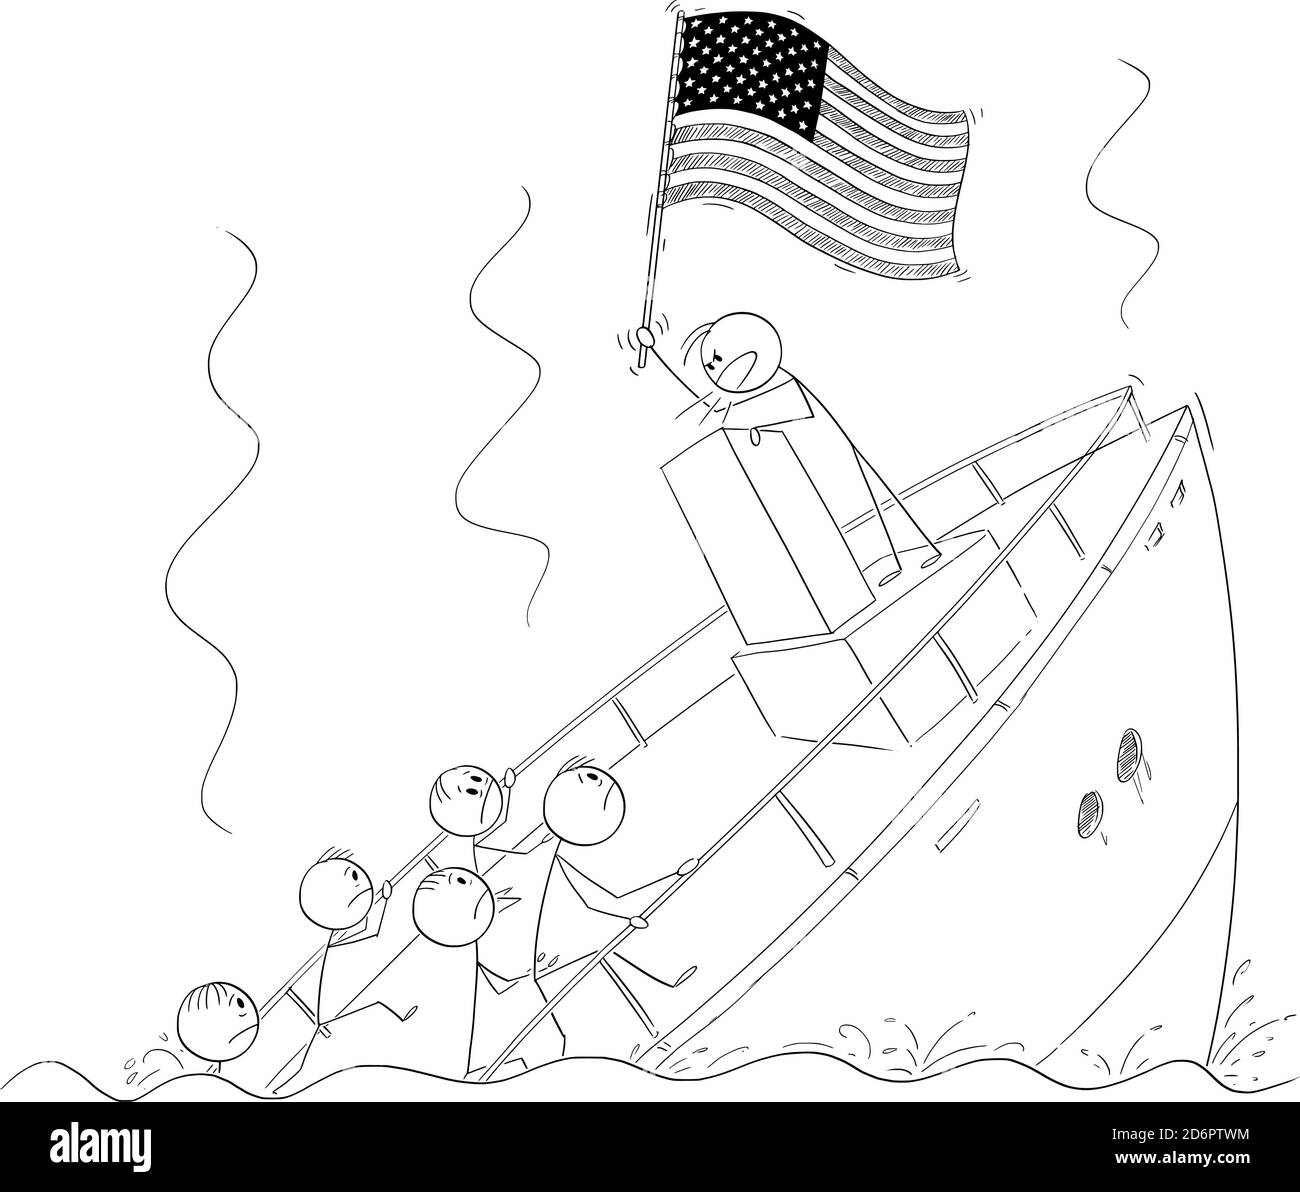 Vektor-Cartoon-Stick Figur Illustration von Politiker oder Führer halten US-Flagge und sprechen oder mit Rede, hinter Rednerpult während Schiff sinkenden ignorieren die Krise und die Realität. Stock Vektor